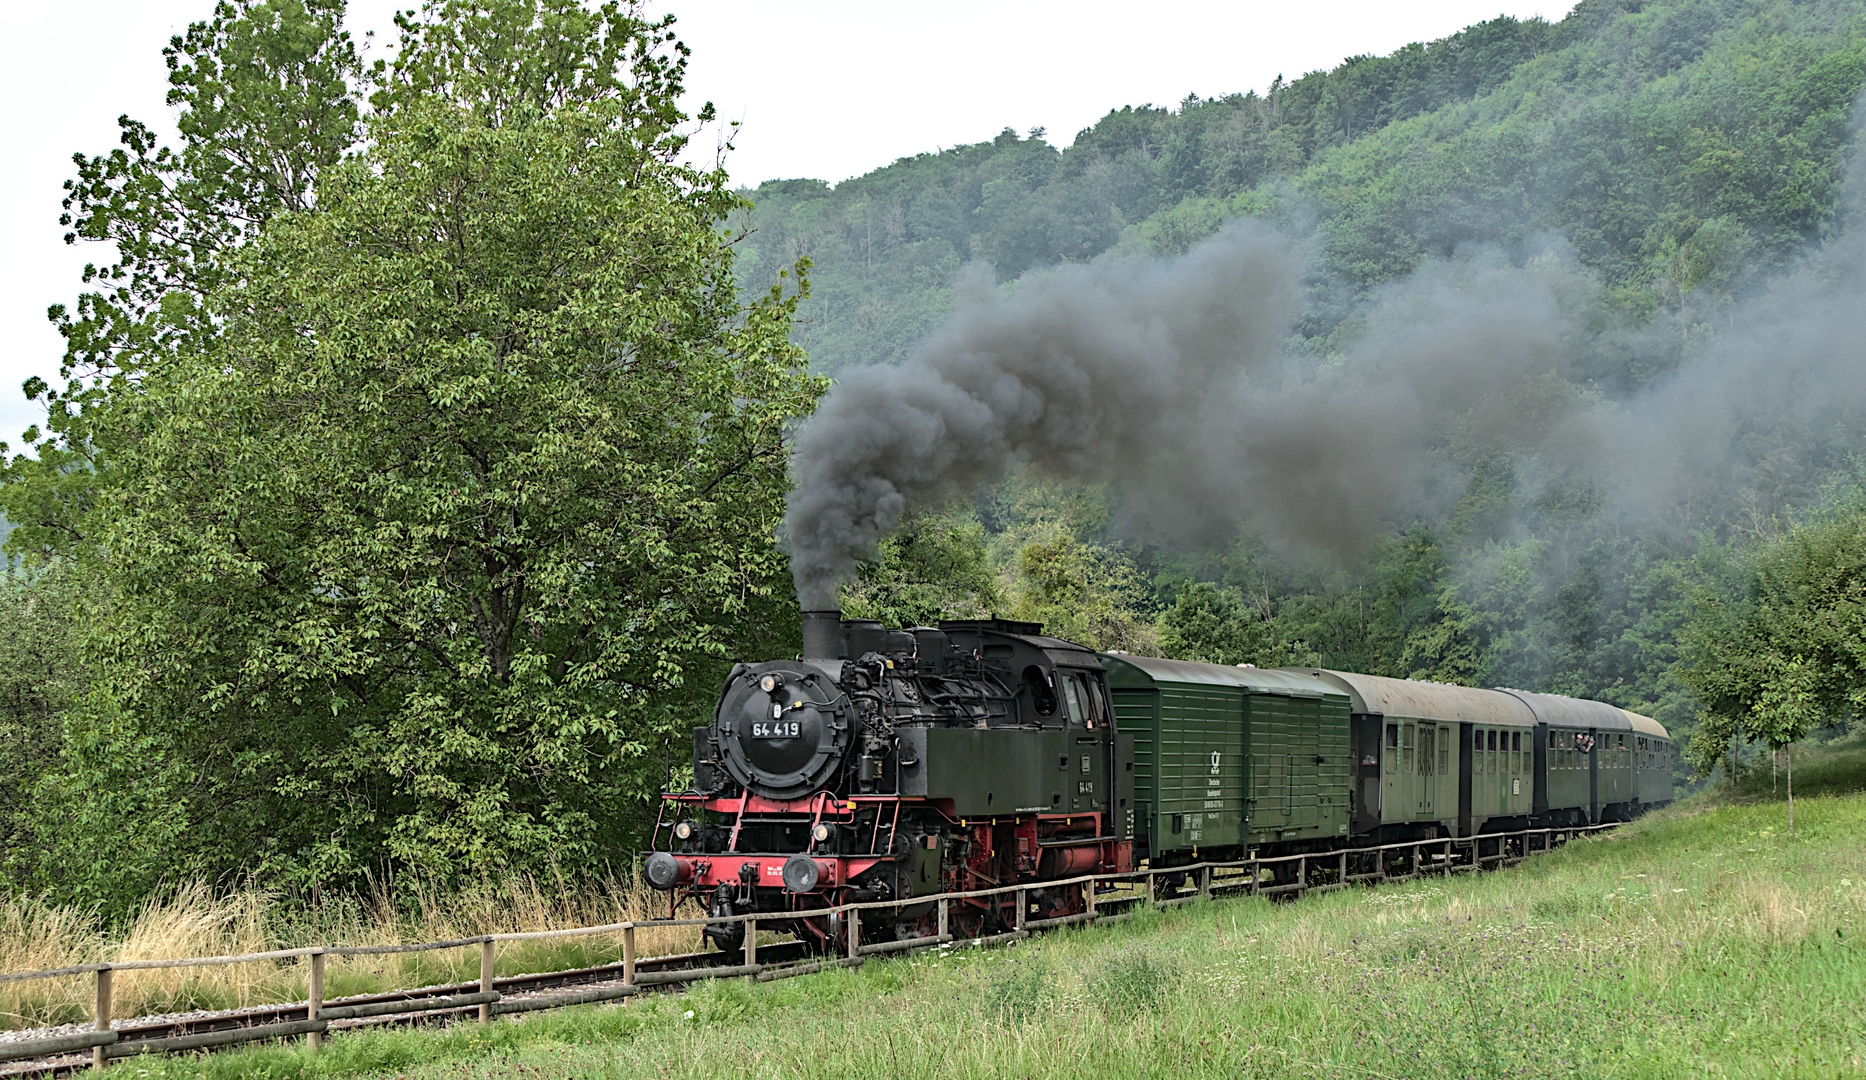 Schwäbische Waldbahn